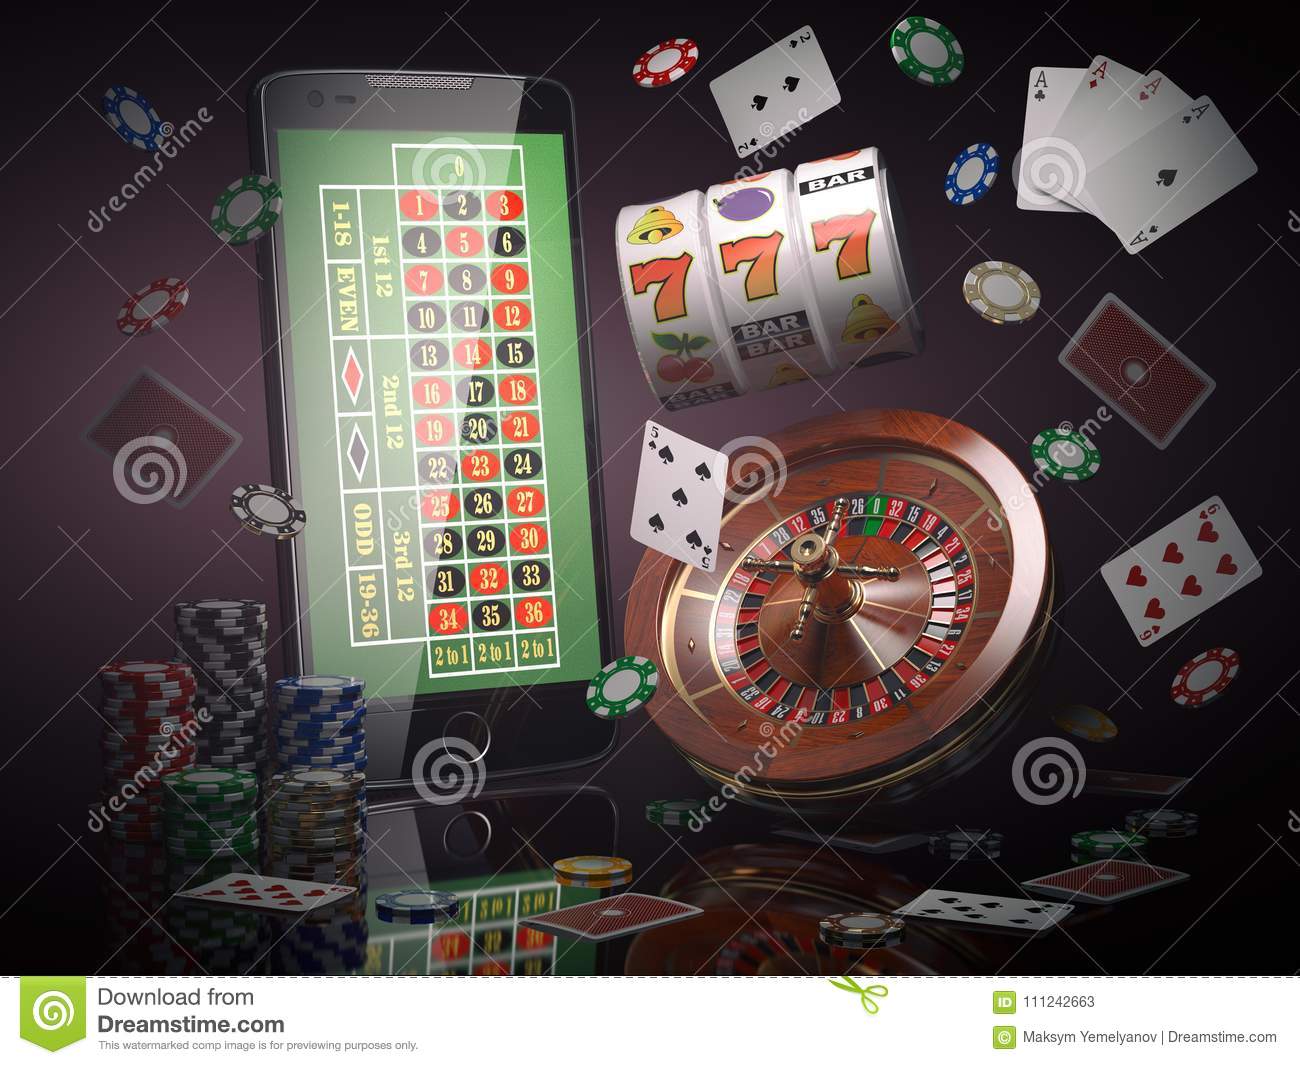 Huuuge casino codes